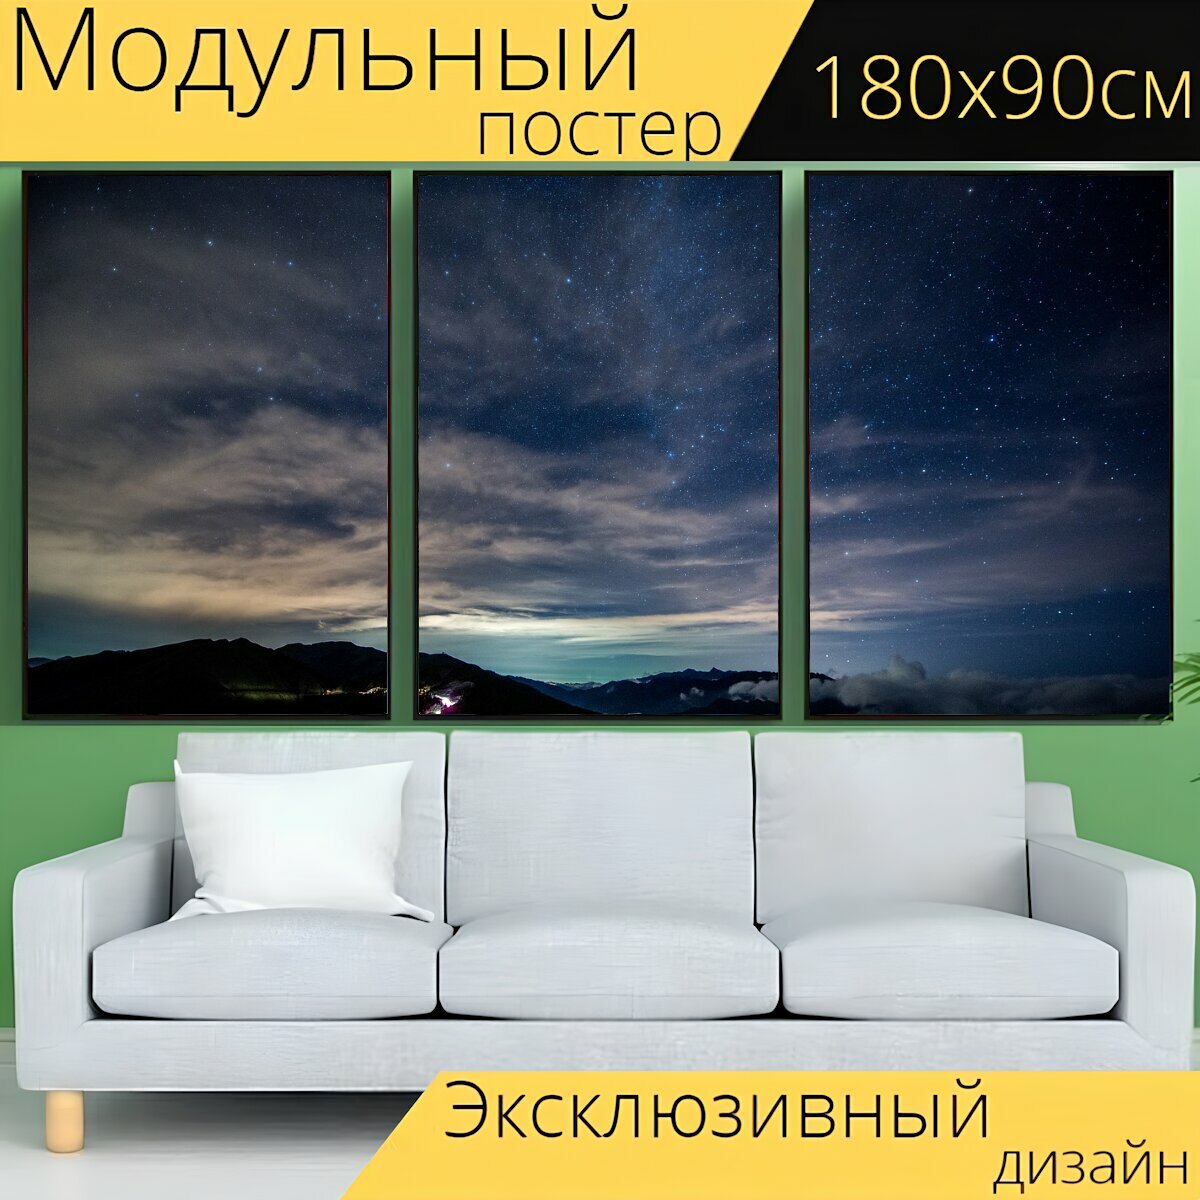 Модульный постер "Темный, небо, звезды" 180 x 90 см. для интерьера